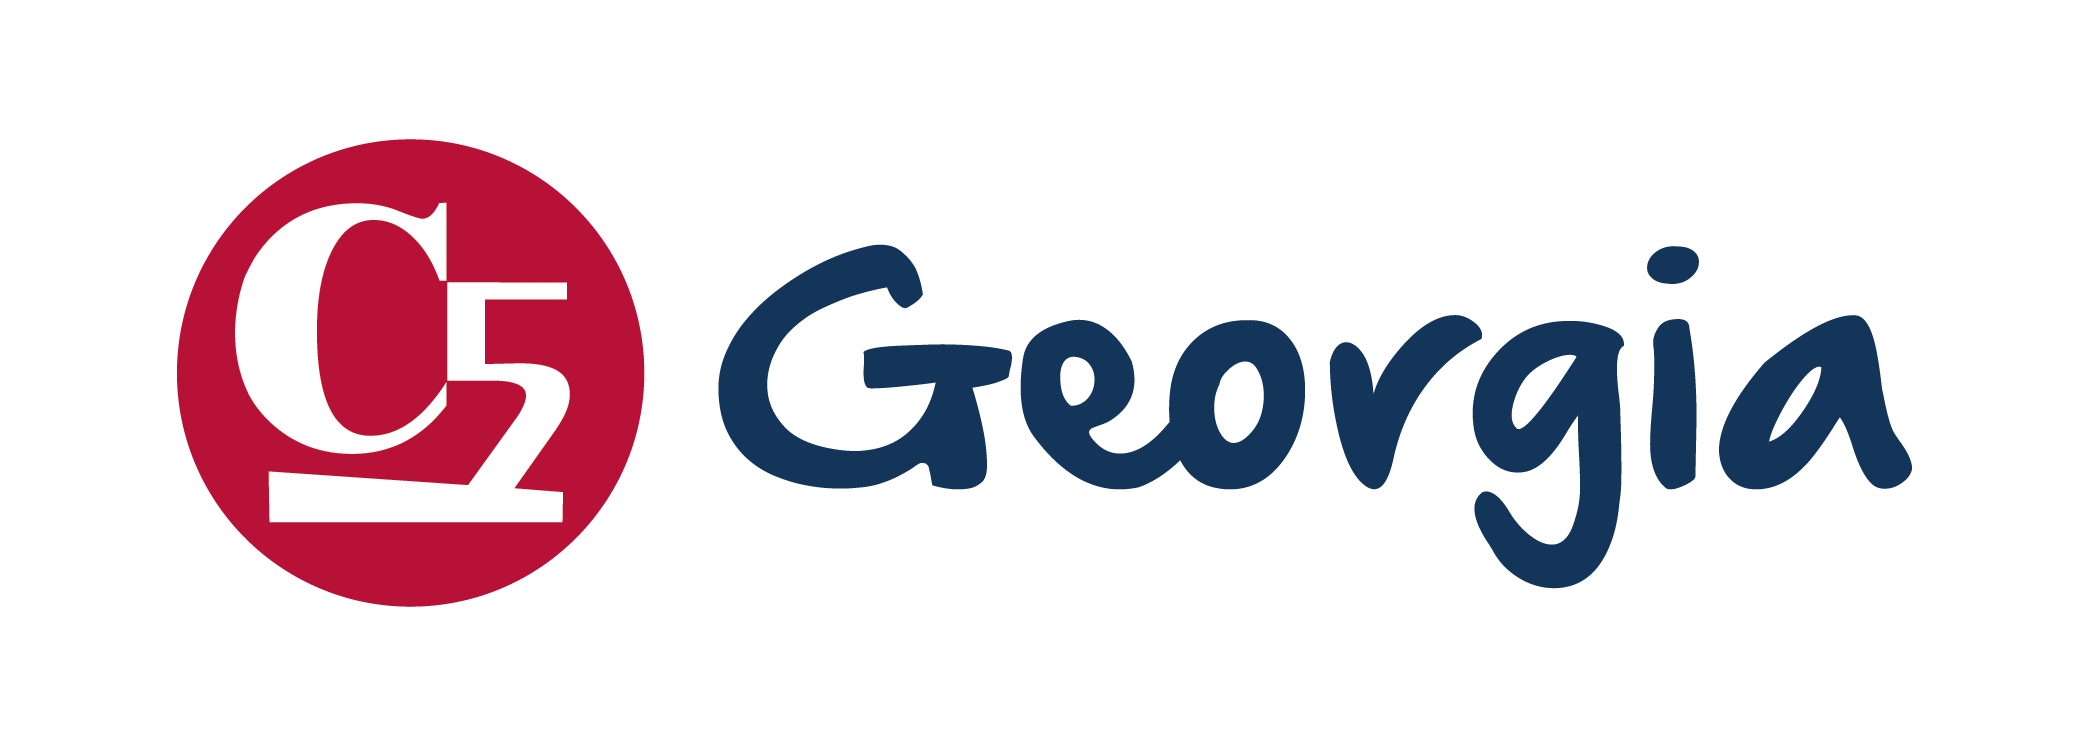 c5-georgia-logo-linear-full-color